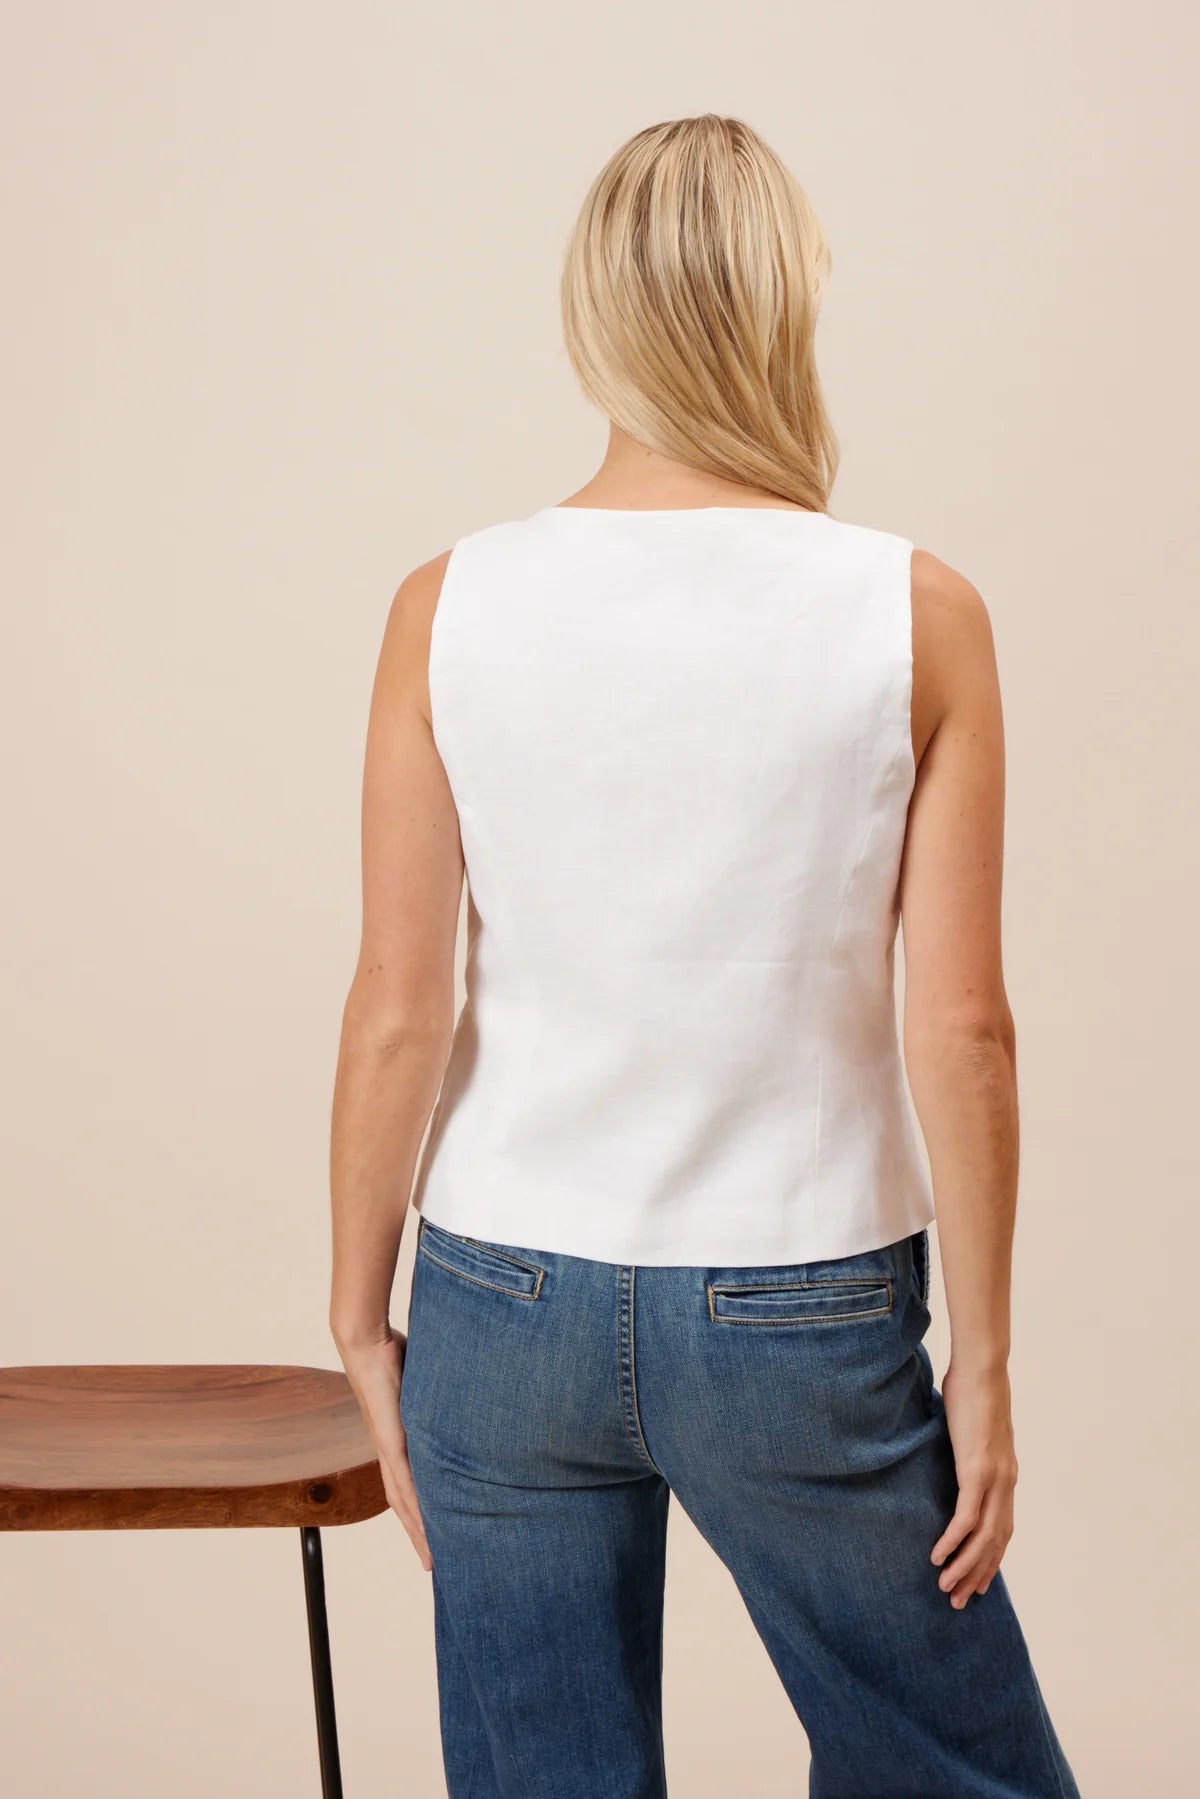 White Linen Vest by Lucy Paris